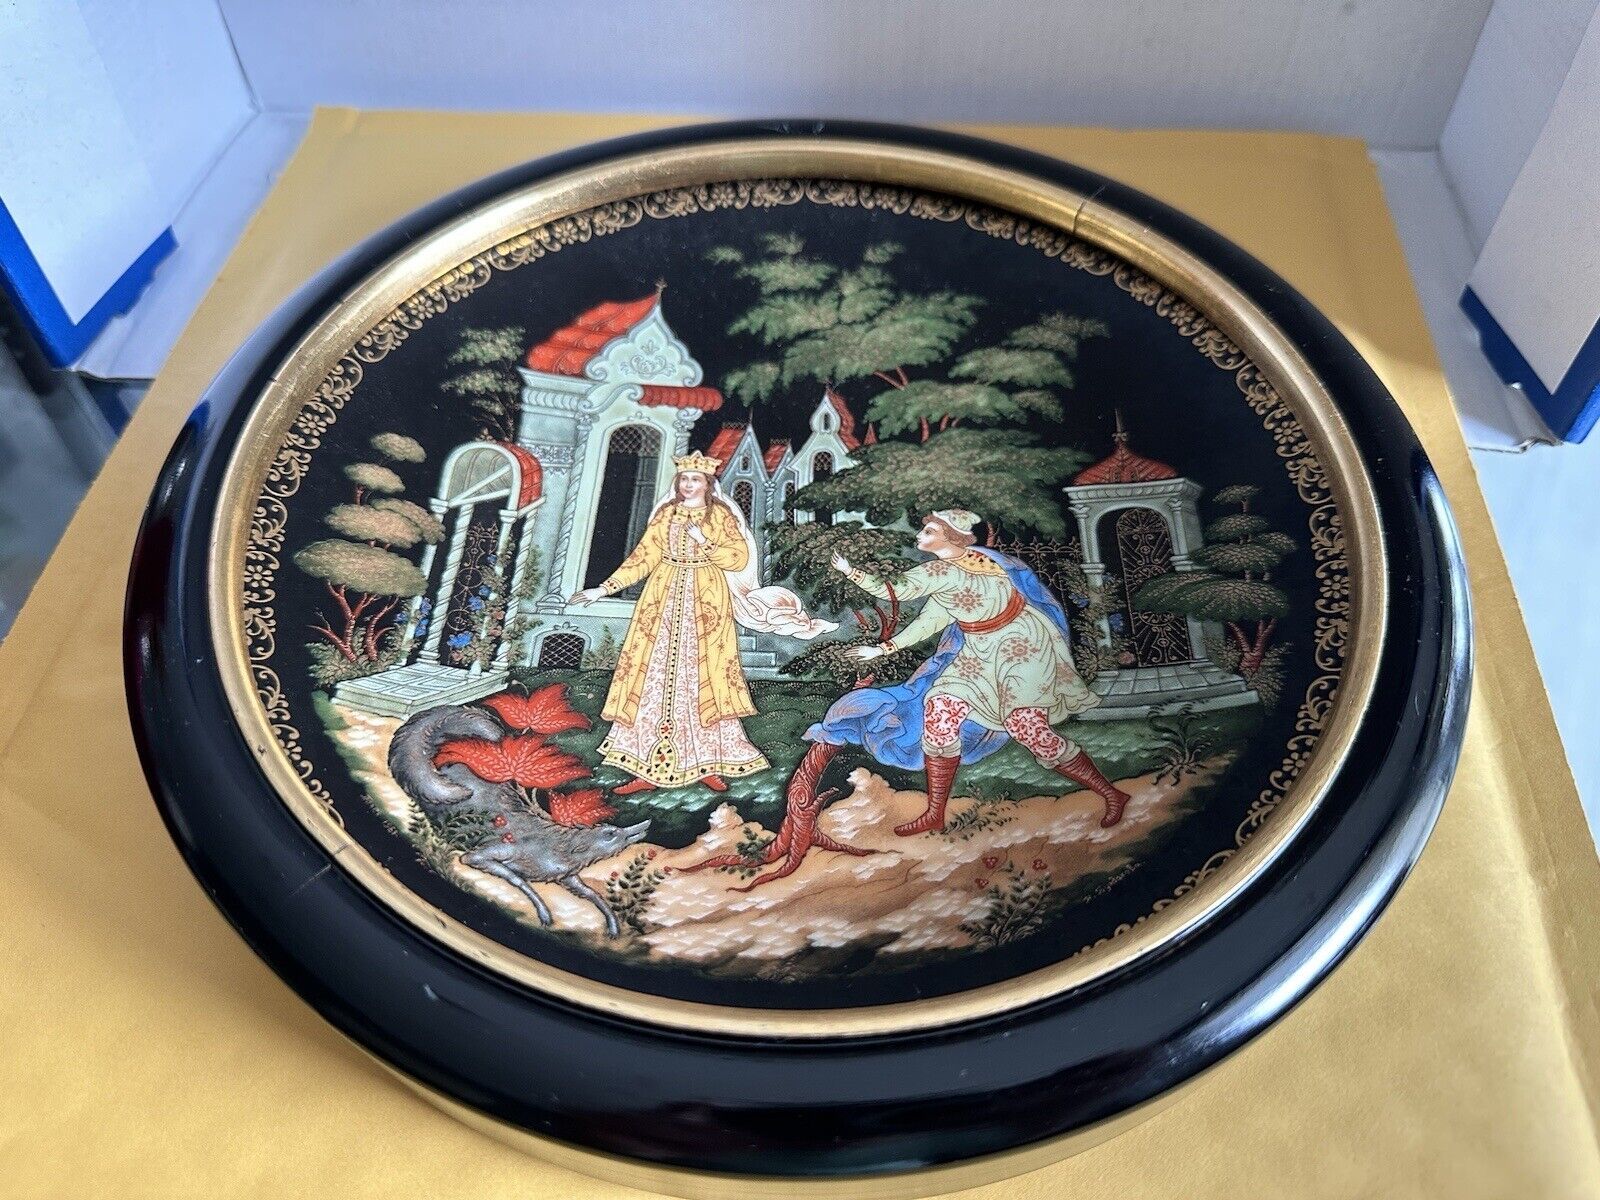 Three VTG Russian Plates by Bradford Exchange LOMONOSOV Porcelain Factory